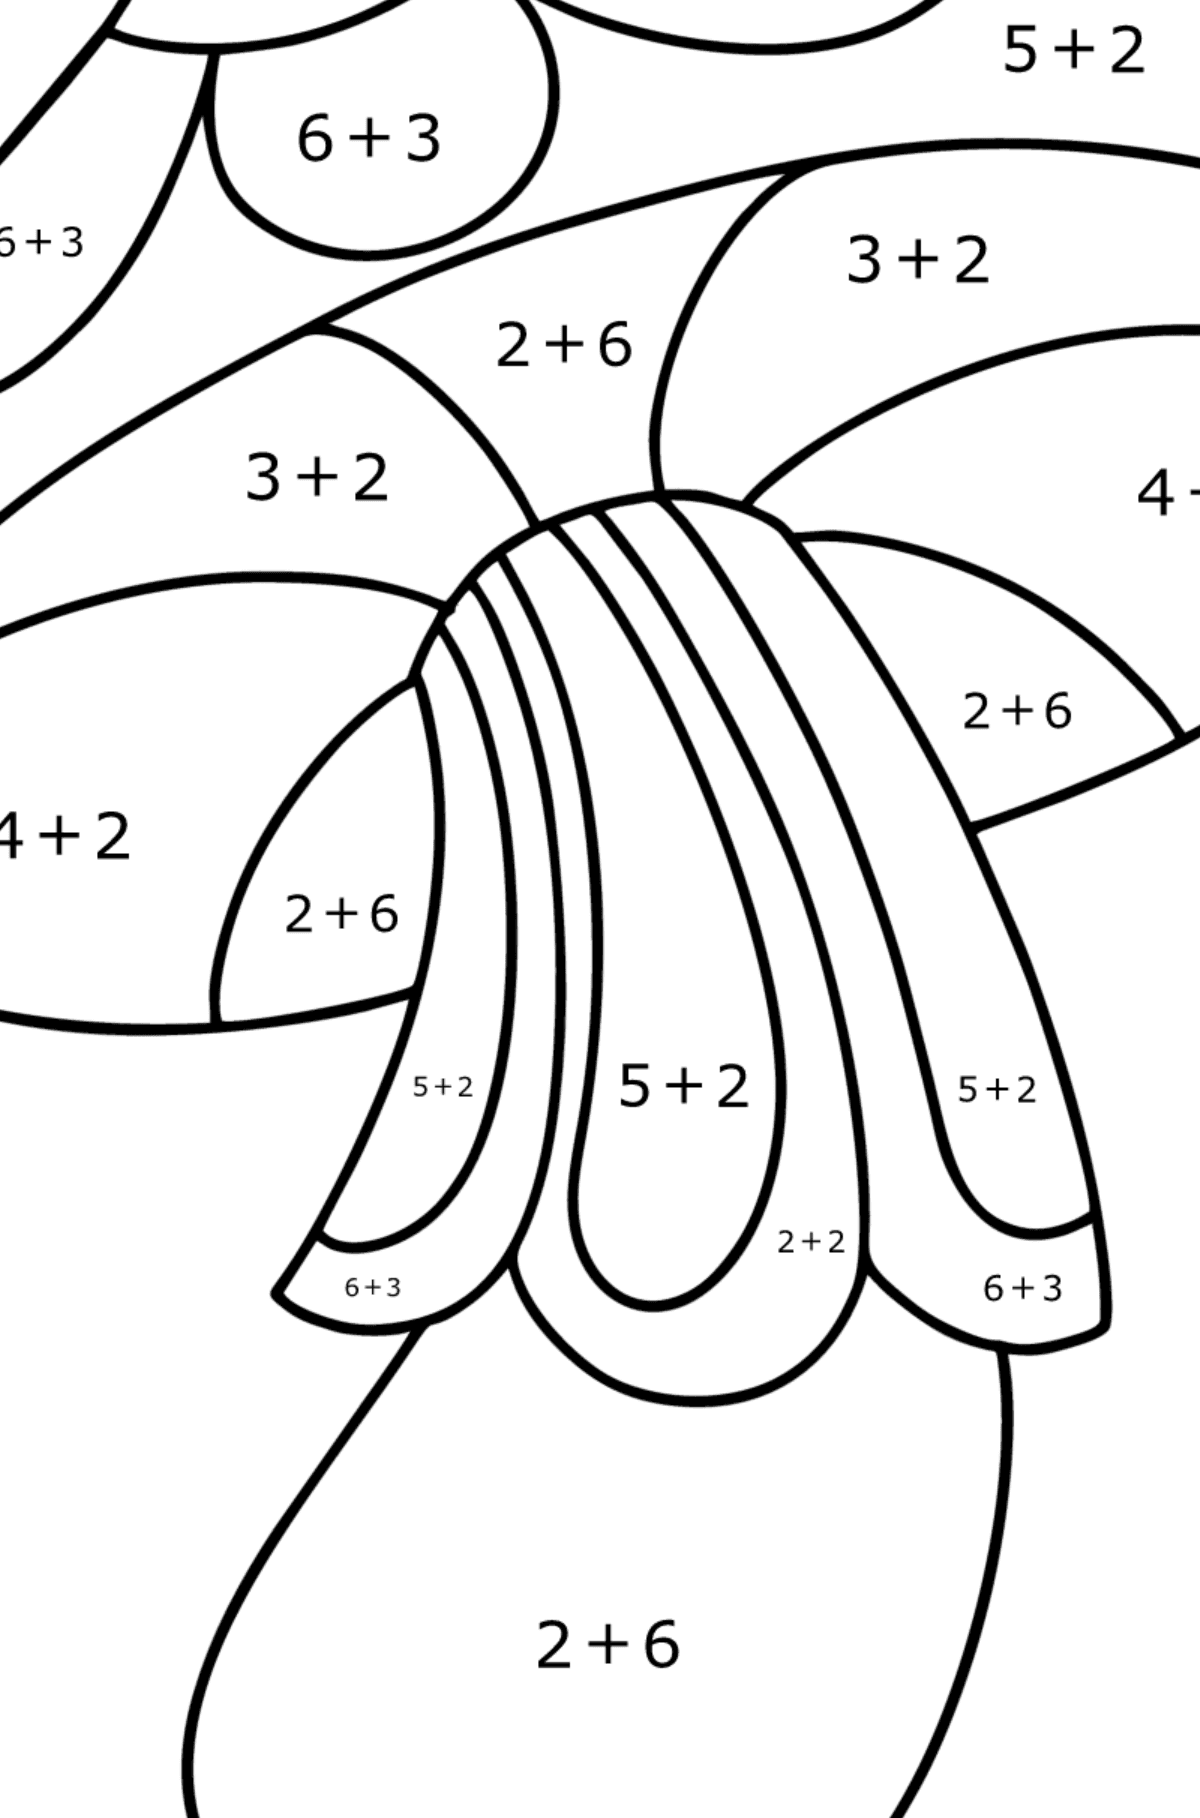 Розмальовка з грибами дзентангл - Математична Розмальовка Додавання для дітей